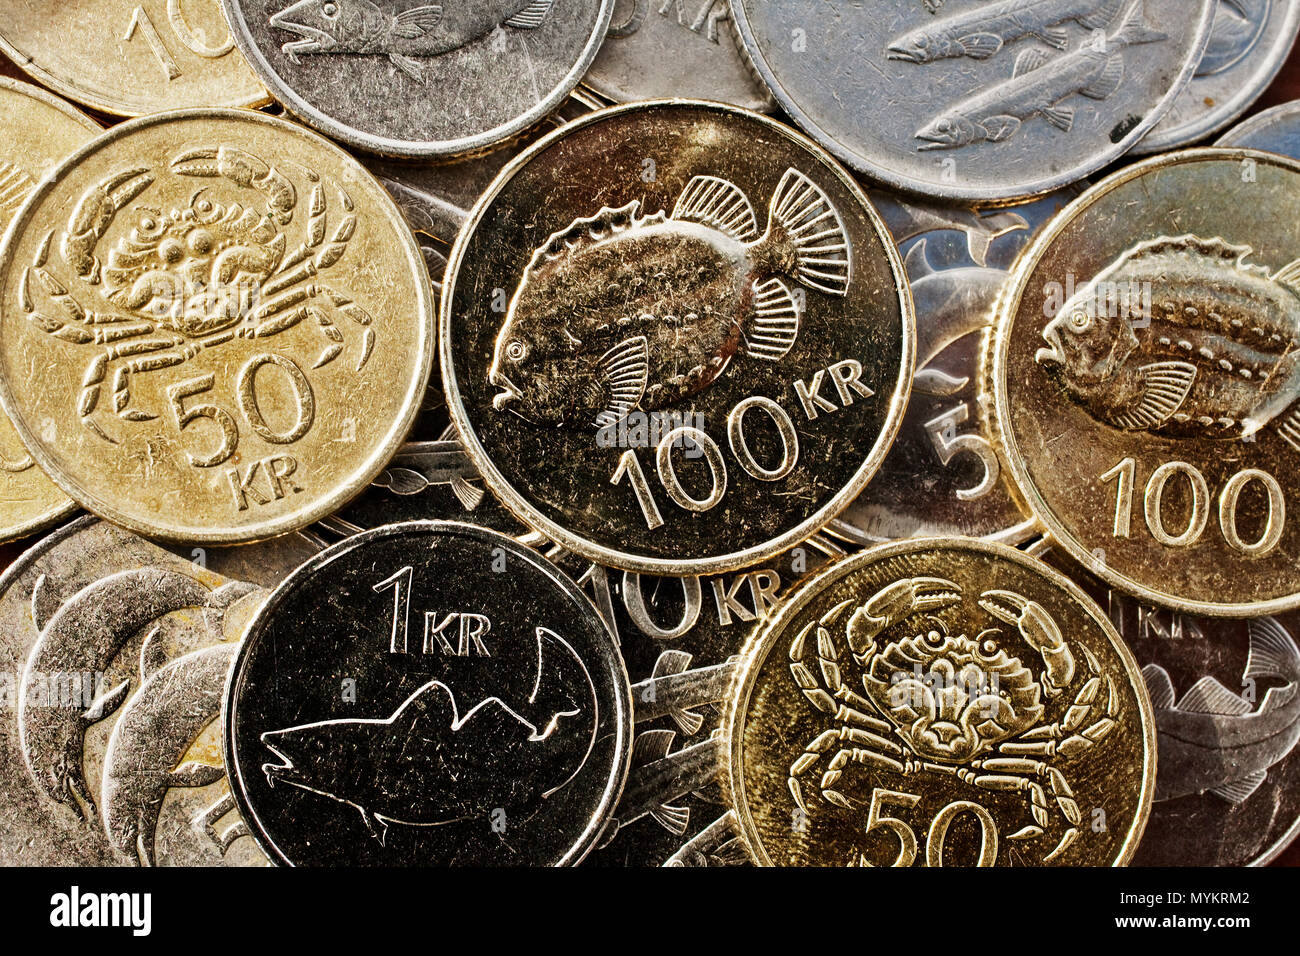 Isländische Krone, Währung, Münzen mit Fisch und Meerestiere, Island Stockfoto